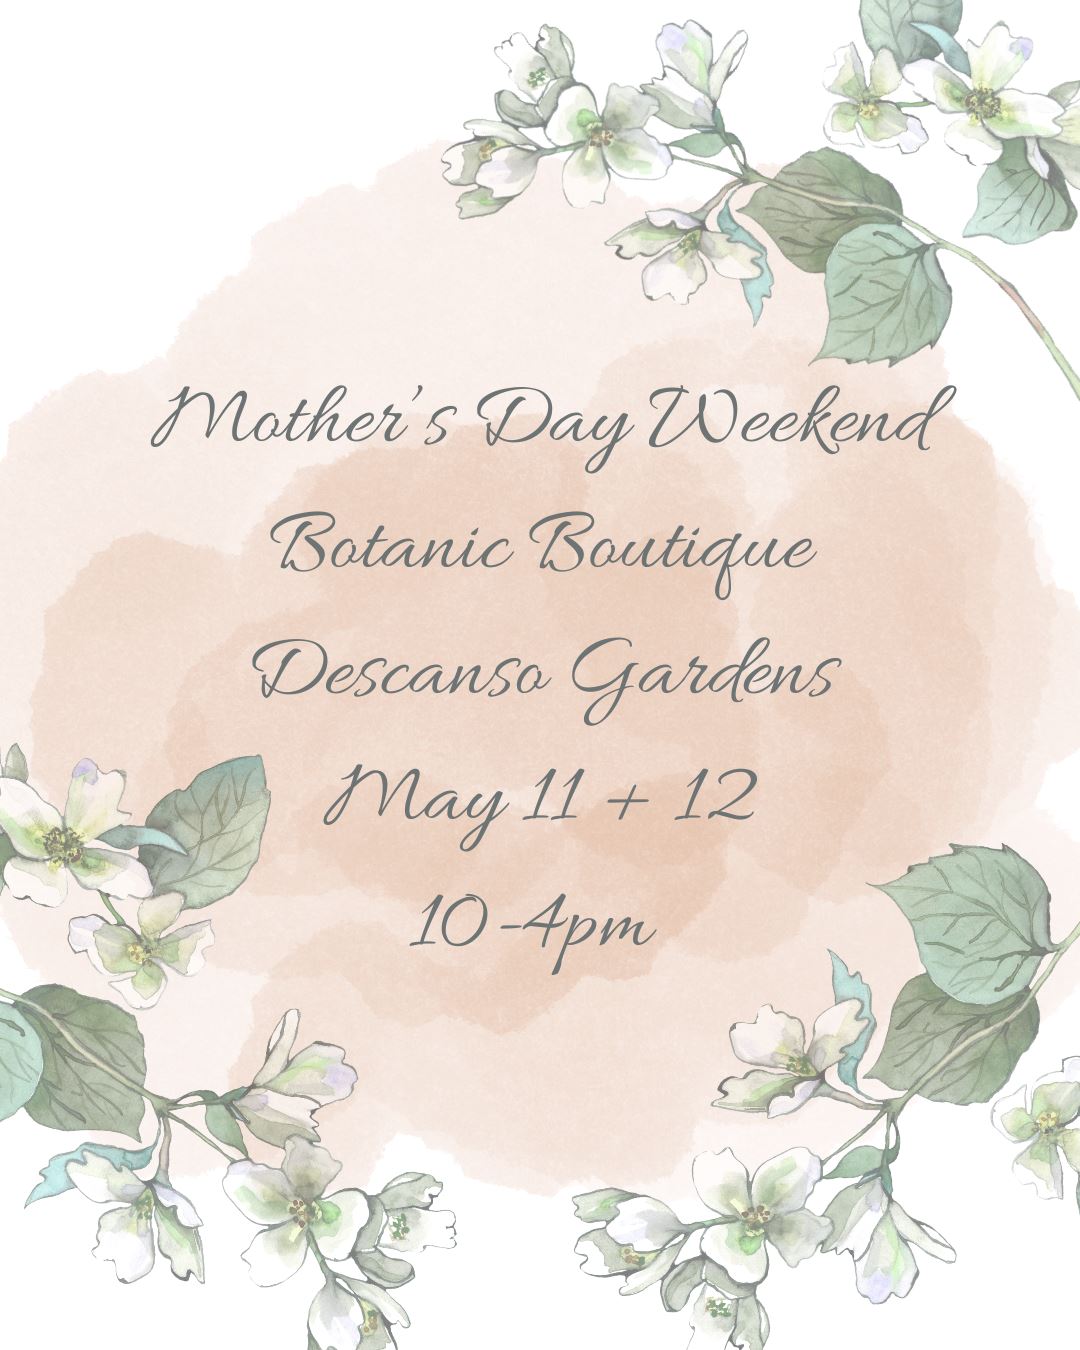 Descanso Garden Botanic Boutique May 11 + 12